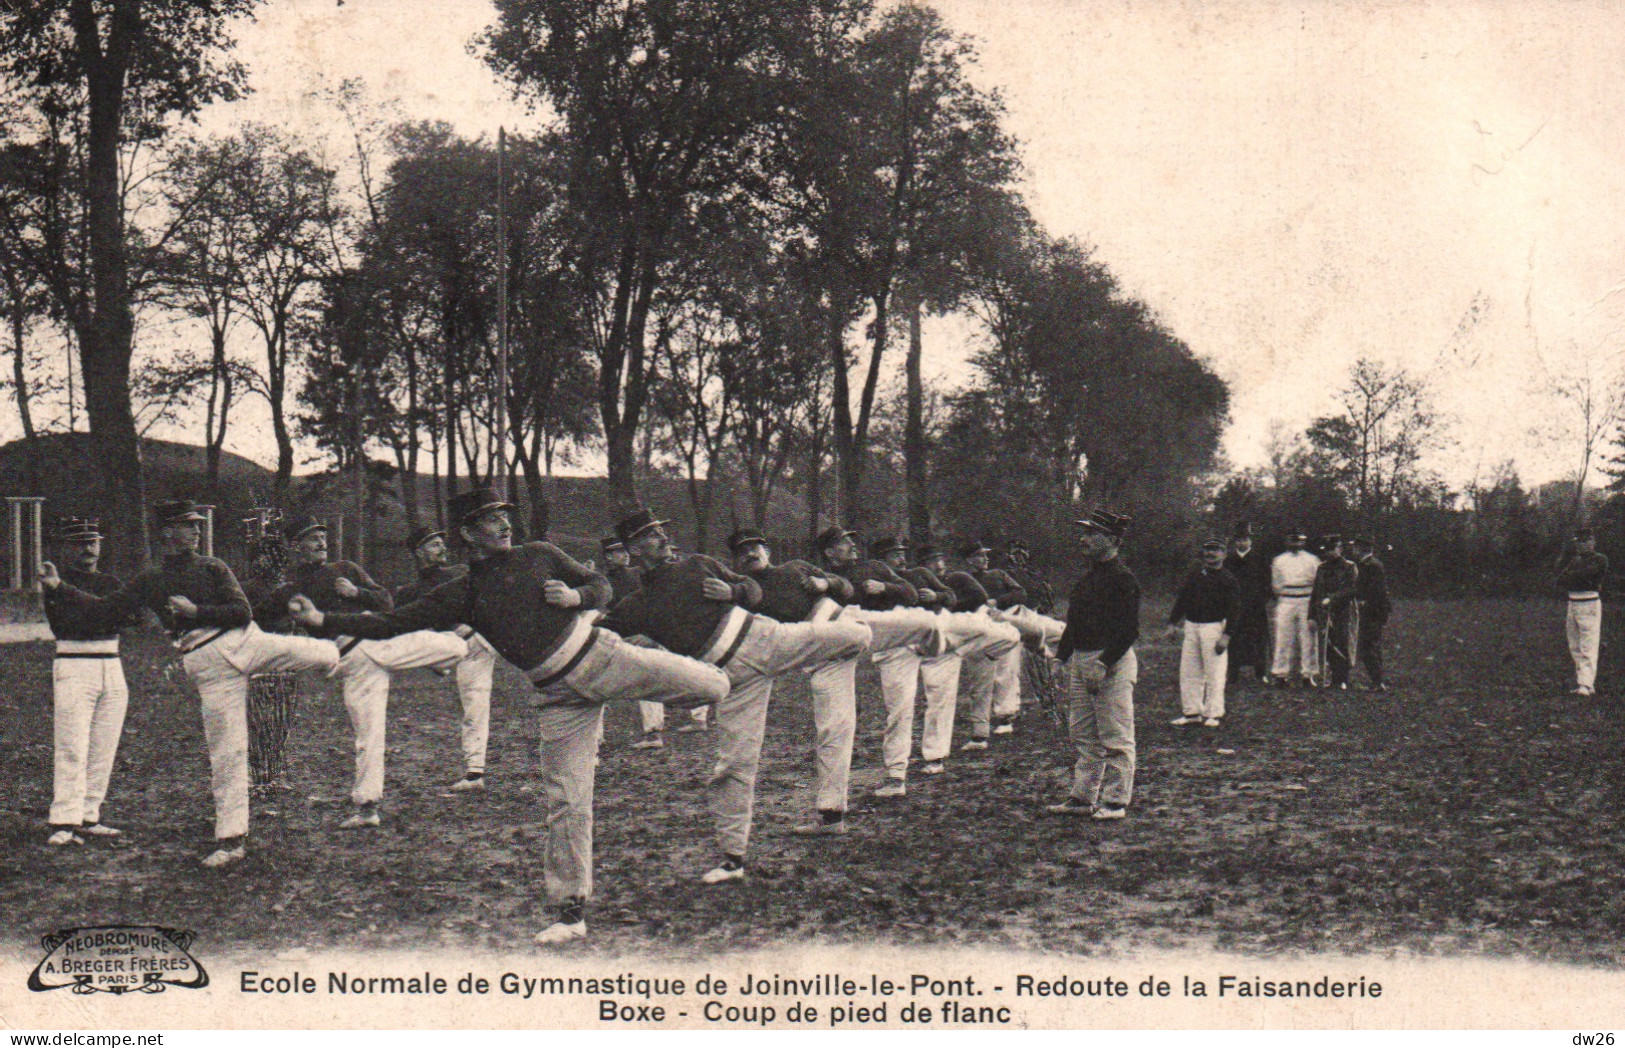 Ecole Normale De Gymnastique Joinville-le-Pont, Redoute De La Faisanderie, Boxe Française: Coup De Pied De Flan - Boxe